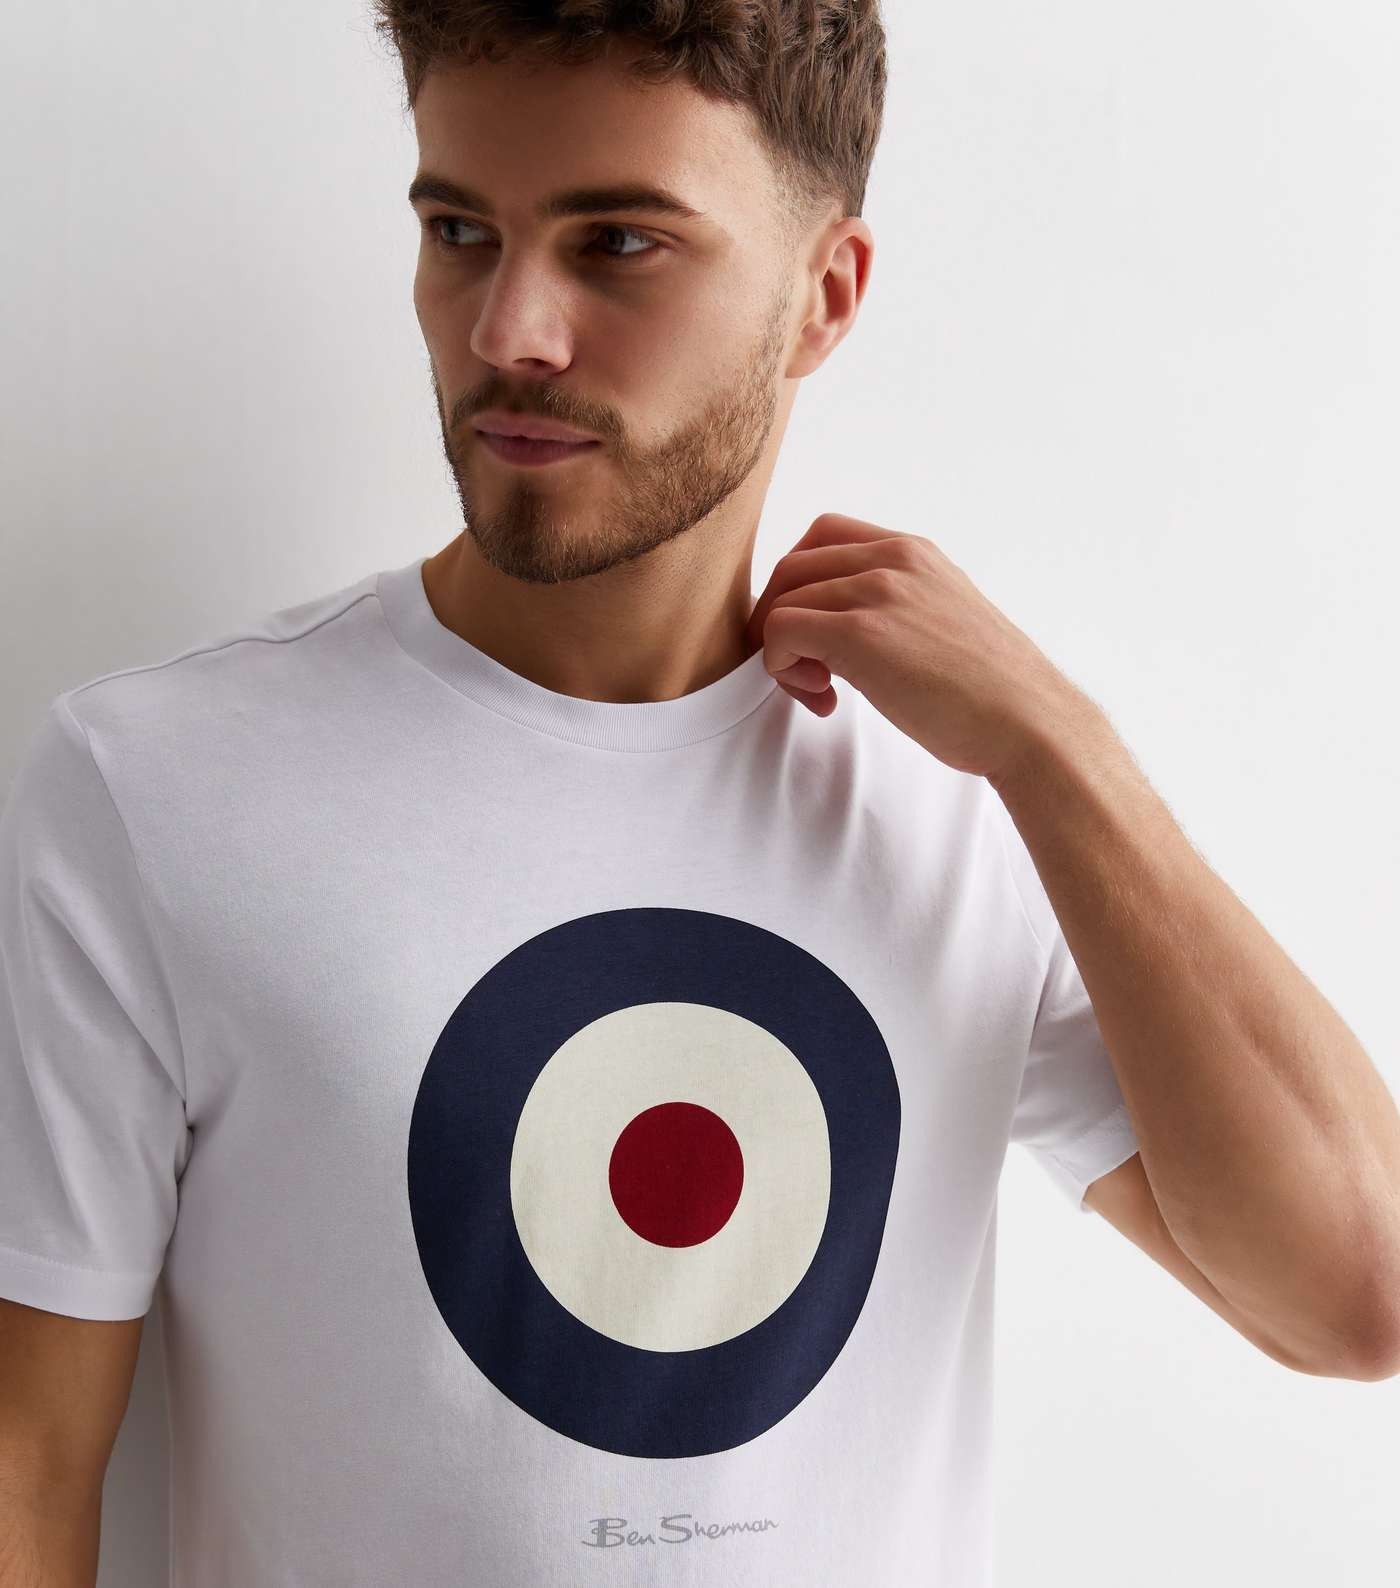 Ben Sherman White Cotton Target Logo T-Shirt Image 2